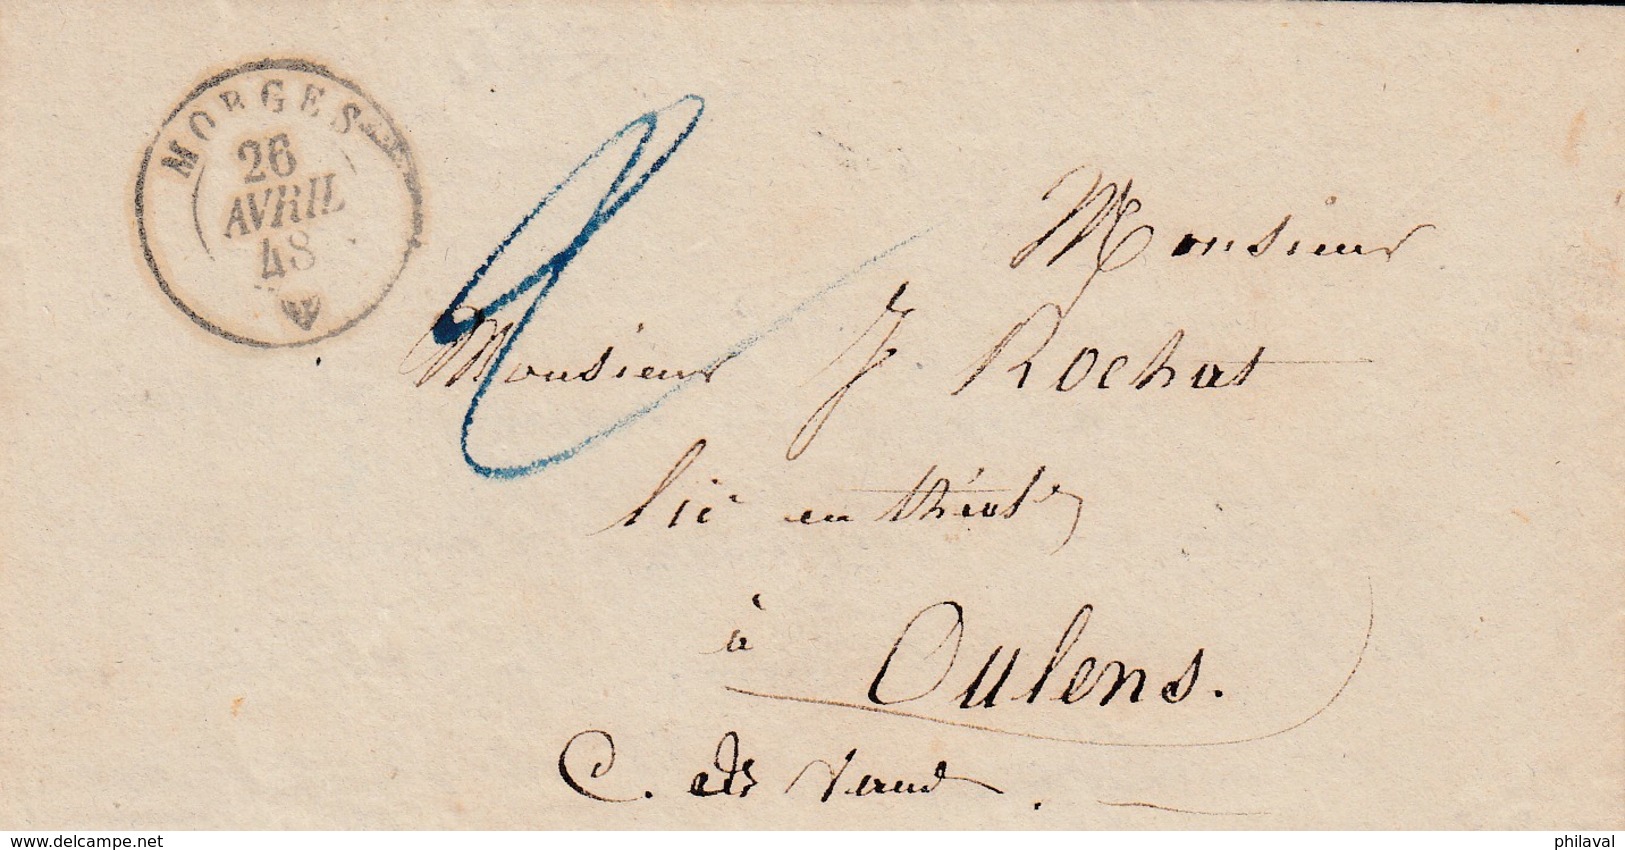 Petite Lettre 12 X 6,5 Cms. Oblitérée Morges Le 26 Avril 48, à Destination De Oulens ( Cachet D'Echallens ) - ...-1845 Precursores